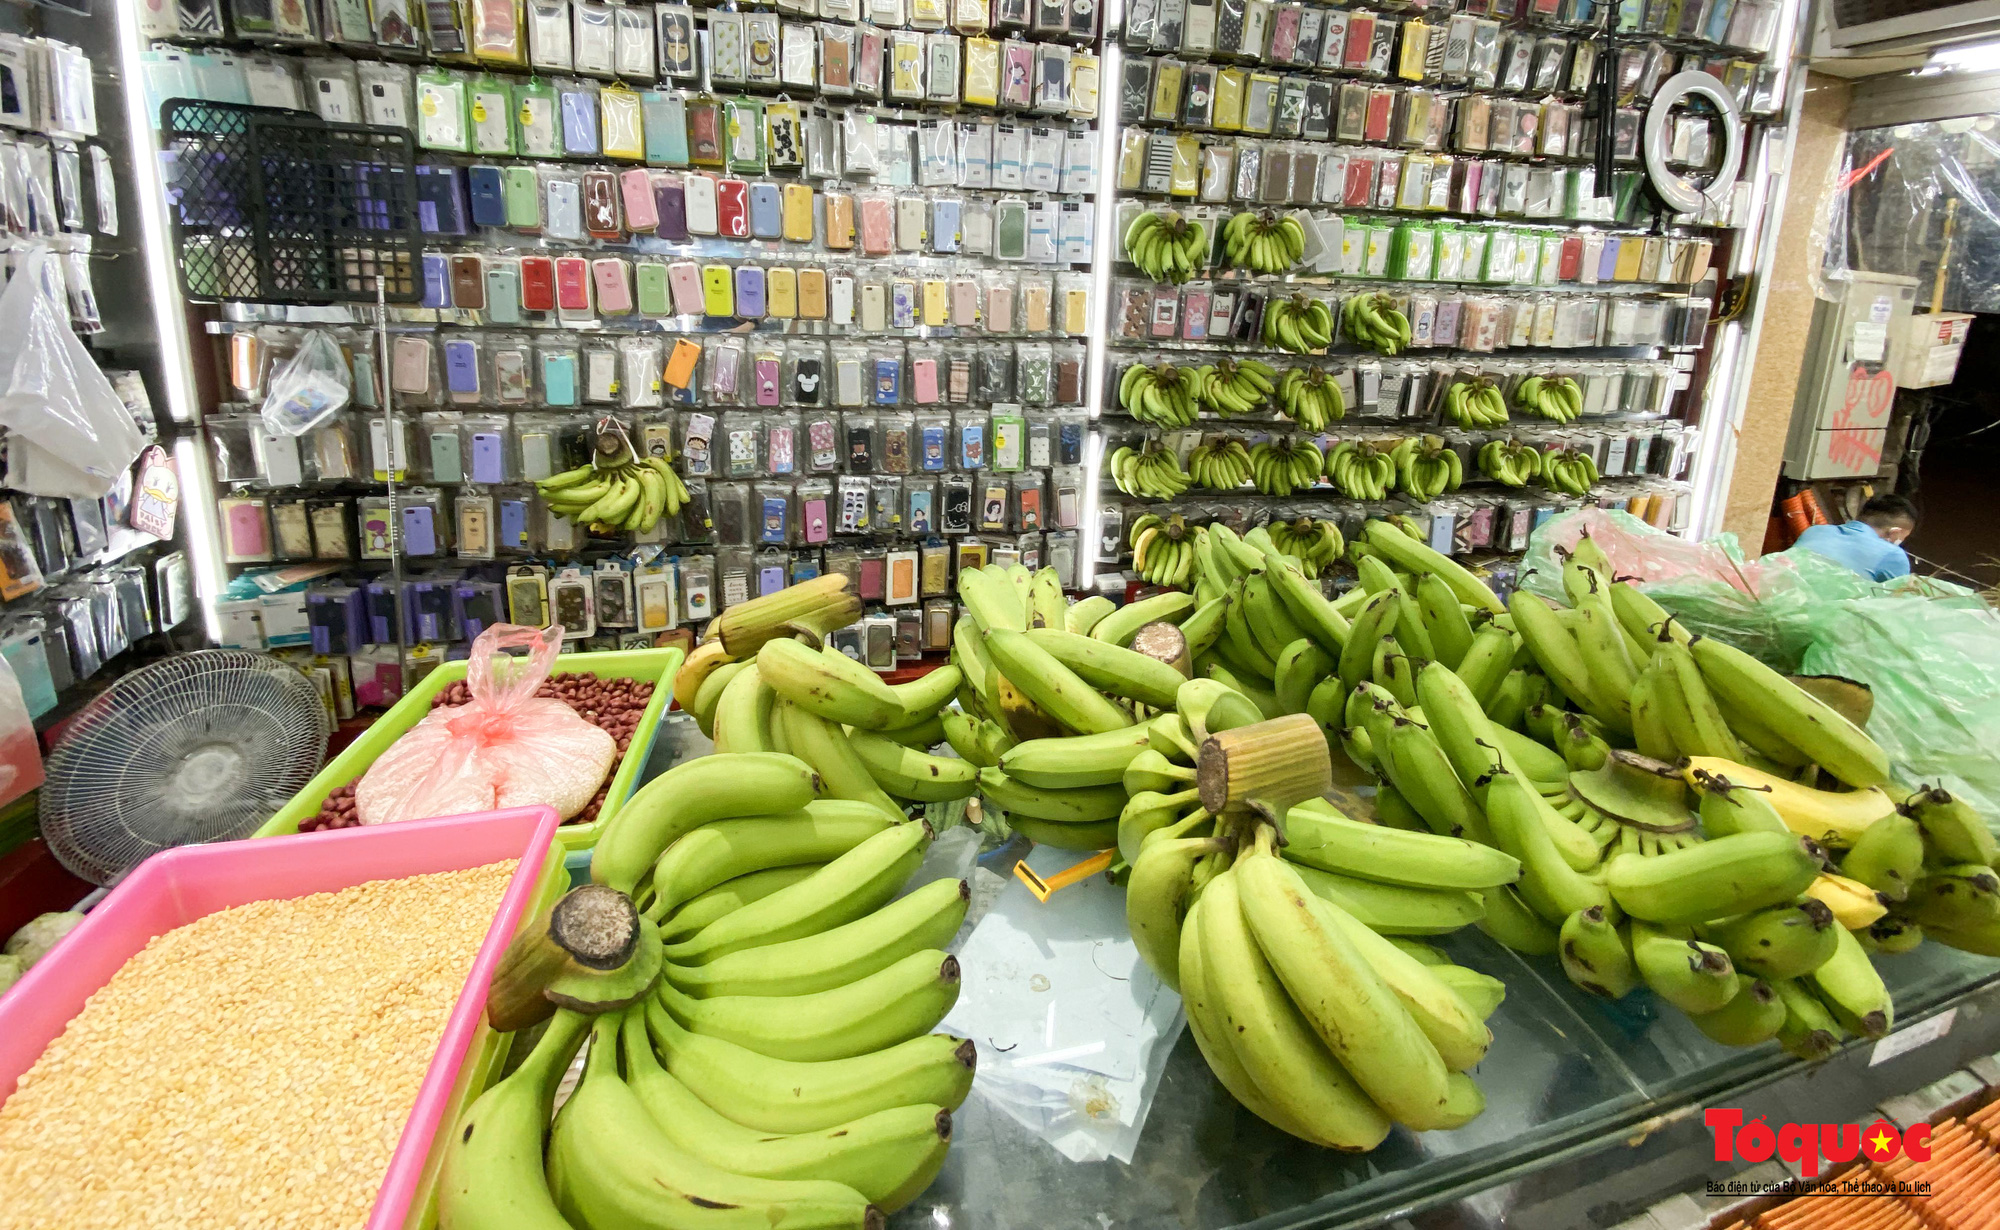 Biến cửa hàng phụ kiện điện thoại thành siêu thị rau mini  giữa phố Cổ - Ảnh 3.